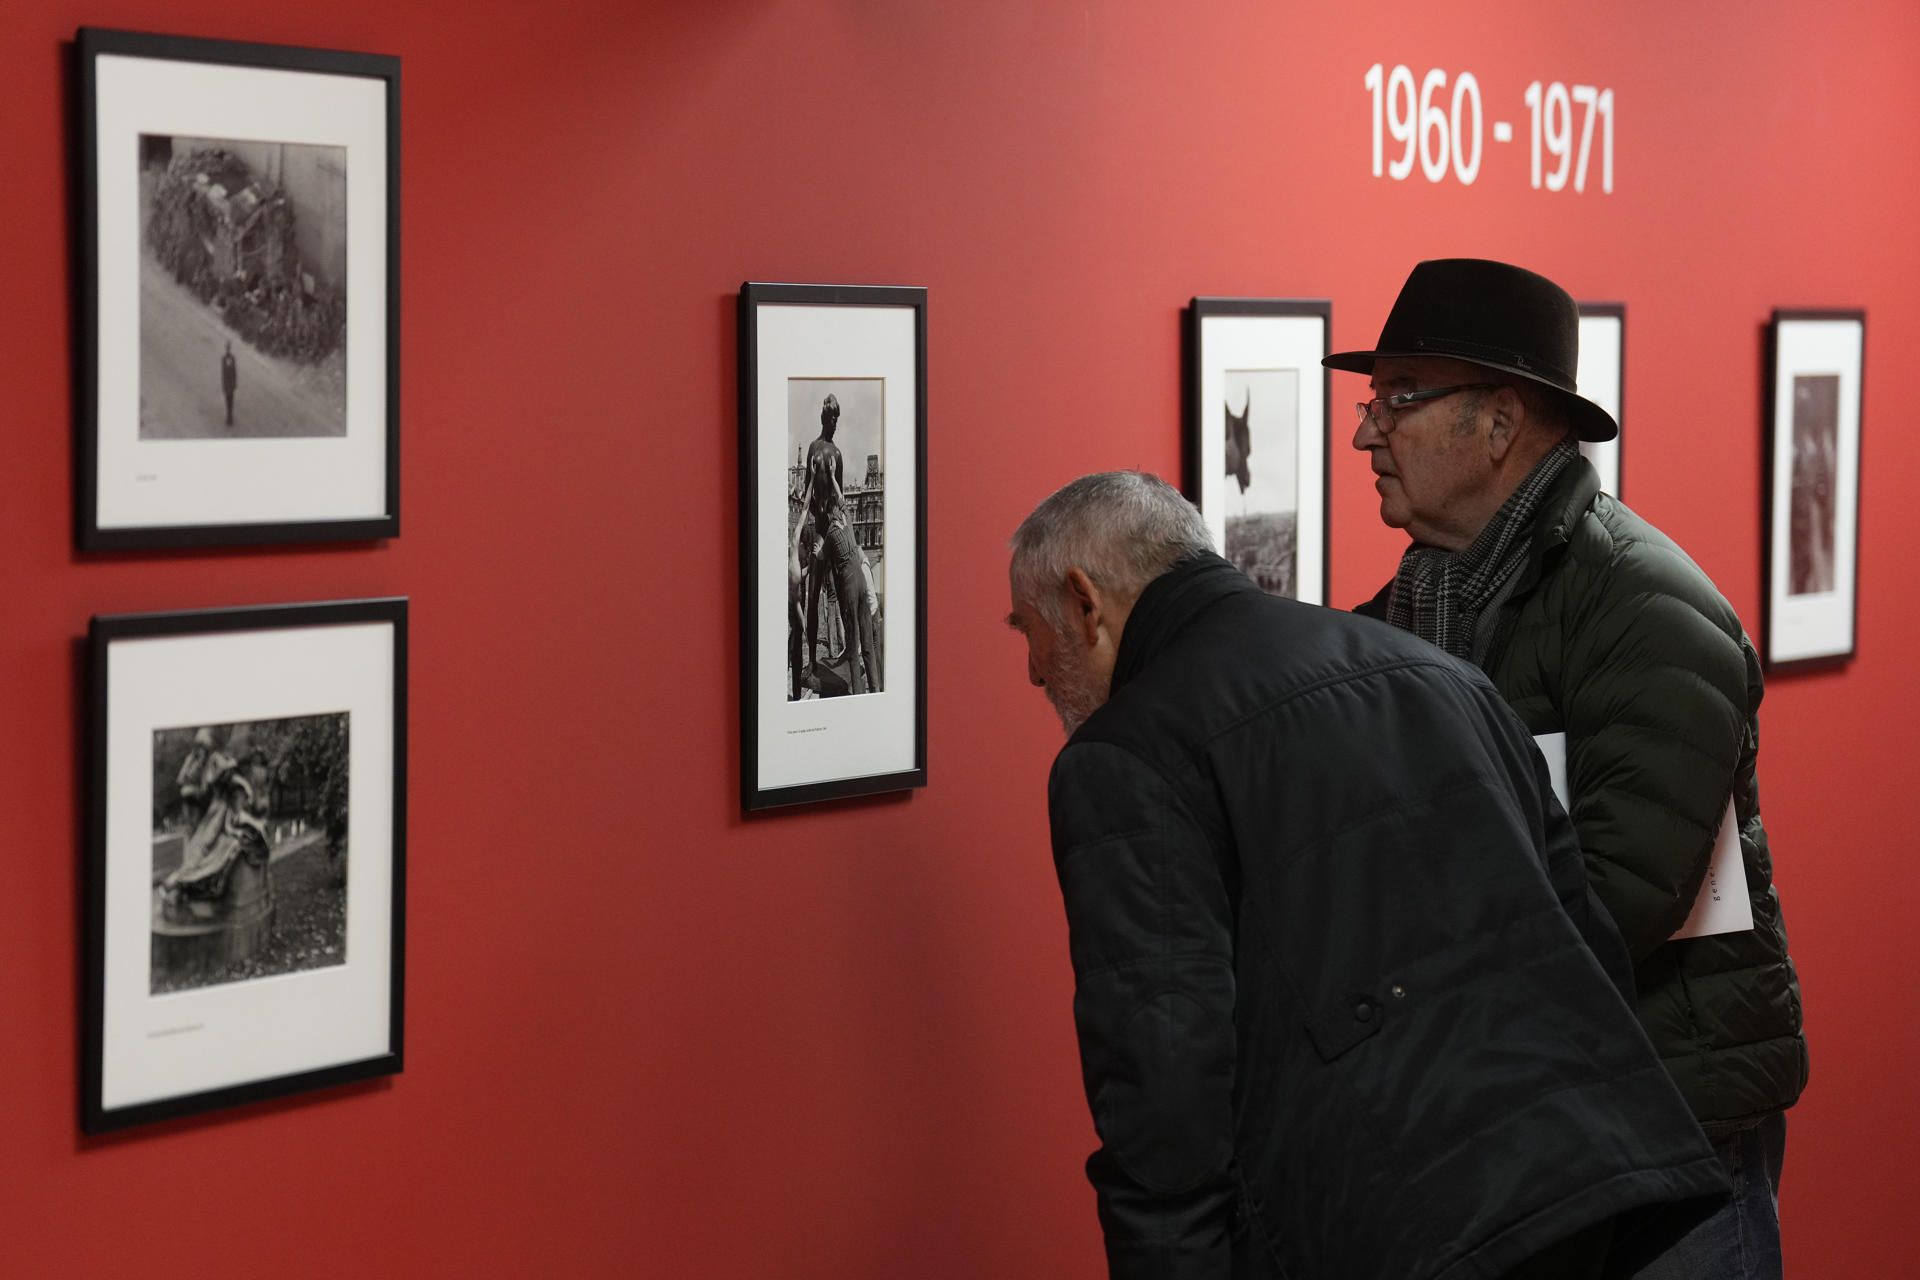  El espacio Foto Nostrum de Barcelona reúne medio centenar de las fotografías más icónicas del francés Robert Doisneau.